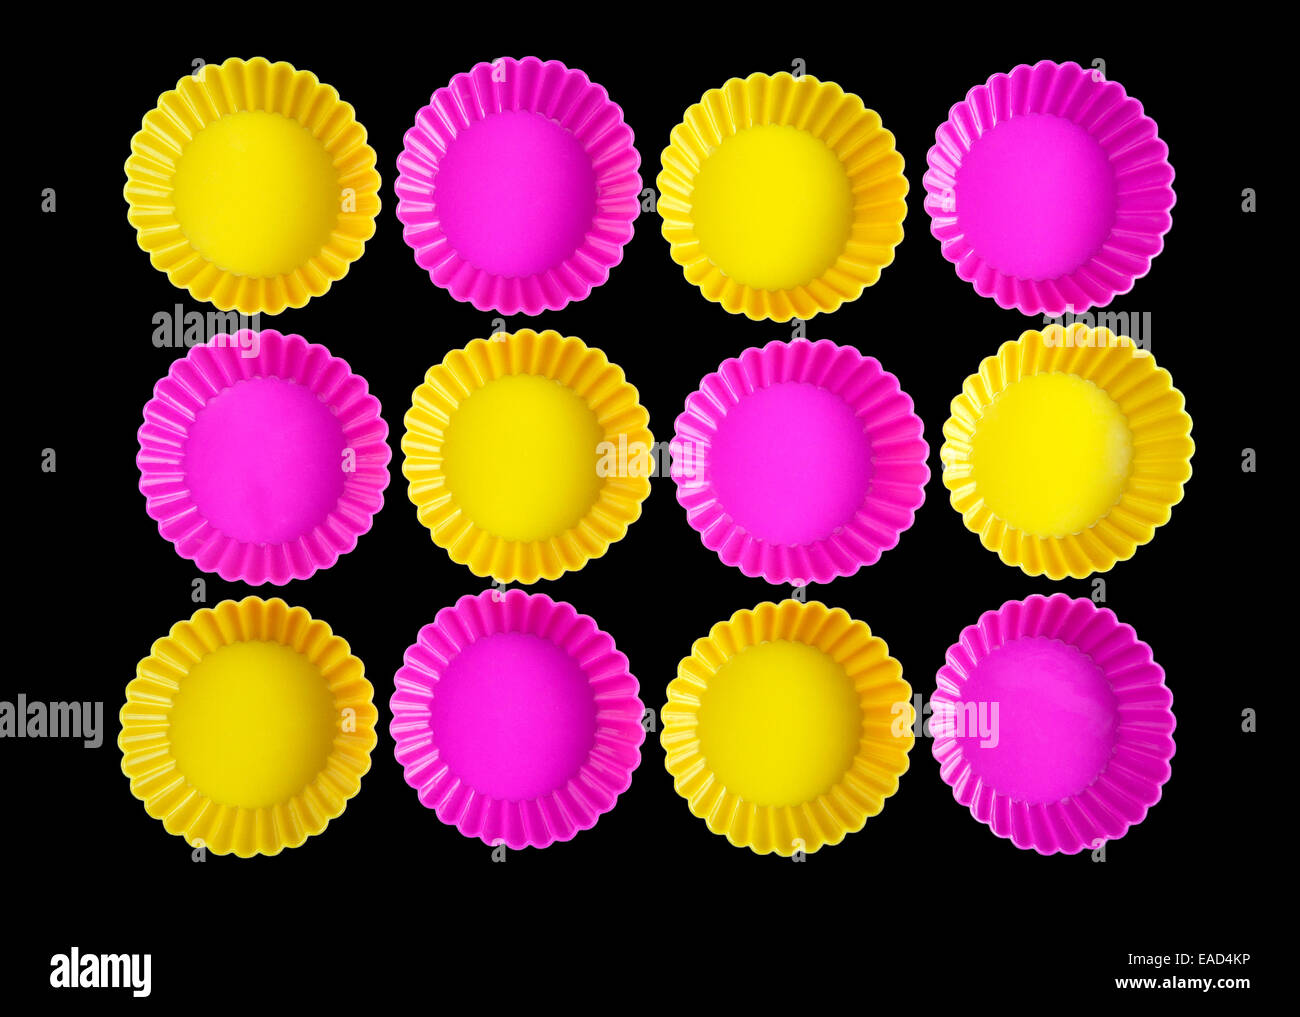 Groupe d'objets arrondis jaune et rose tourné sur fond noir Banque D'Images